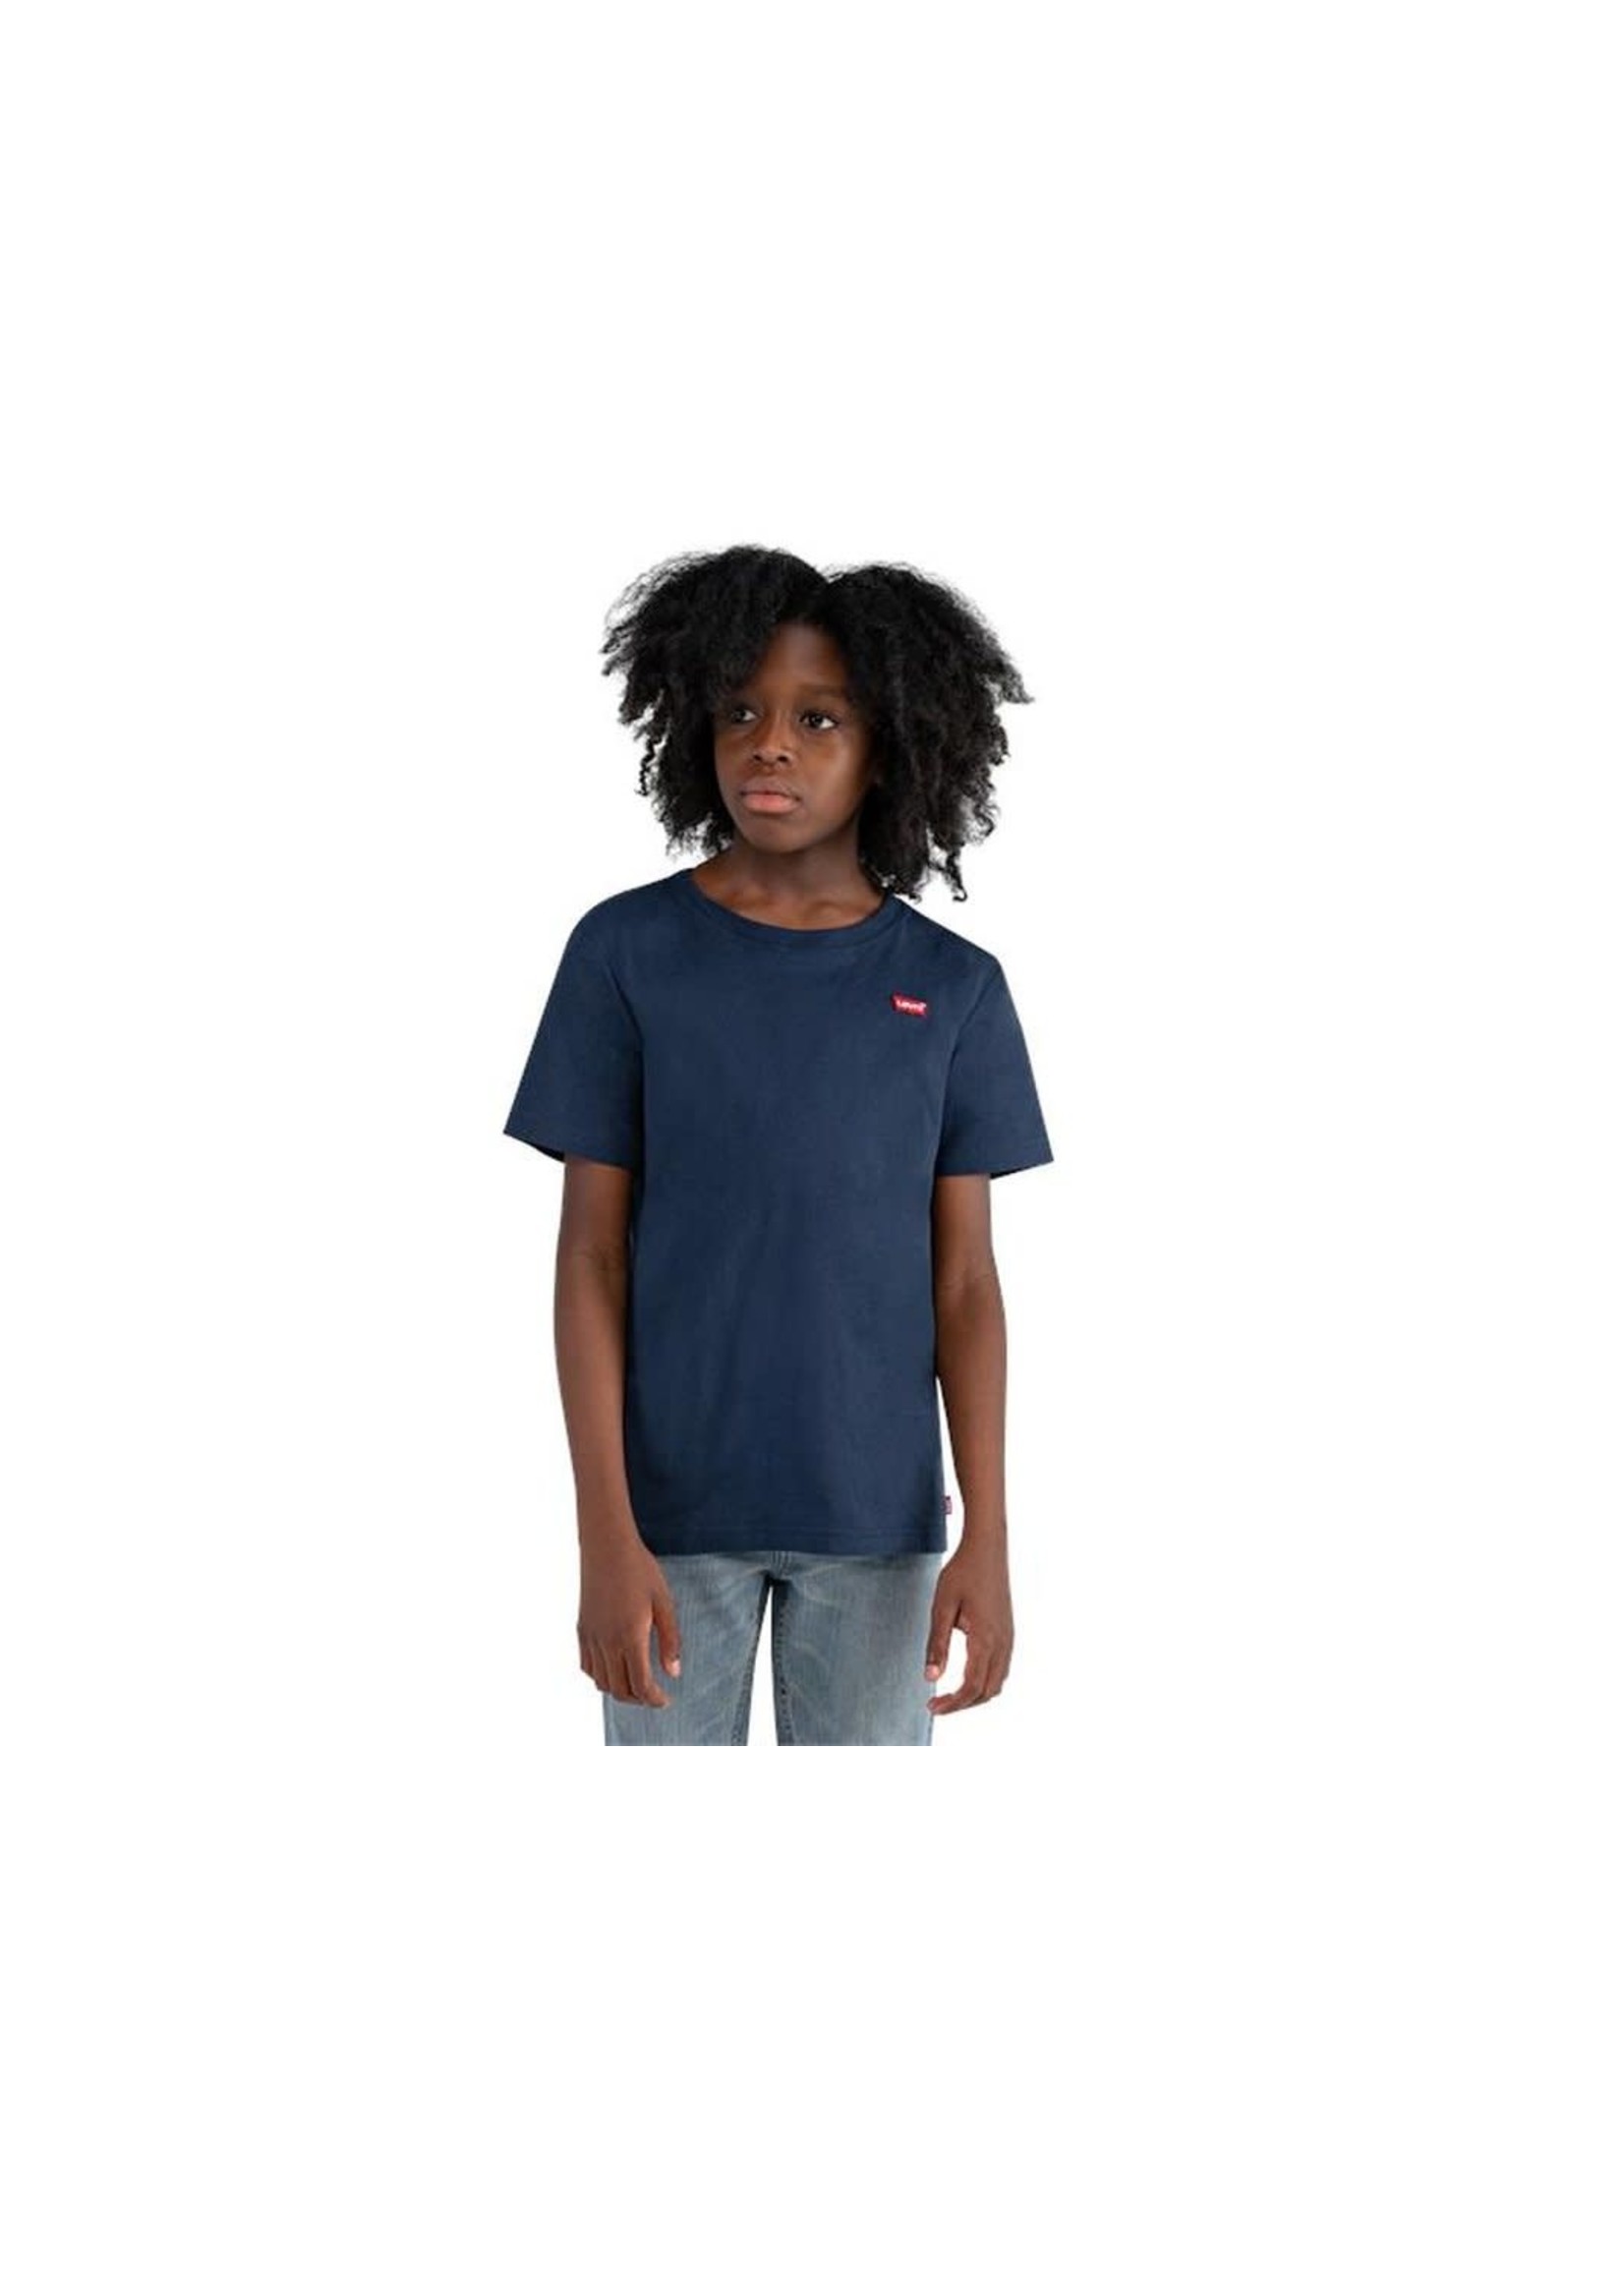 Levi's Levi's Boy t-shirt navy pocket logo - 8/9EA100 C8D